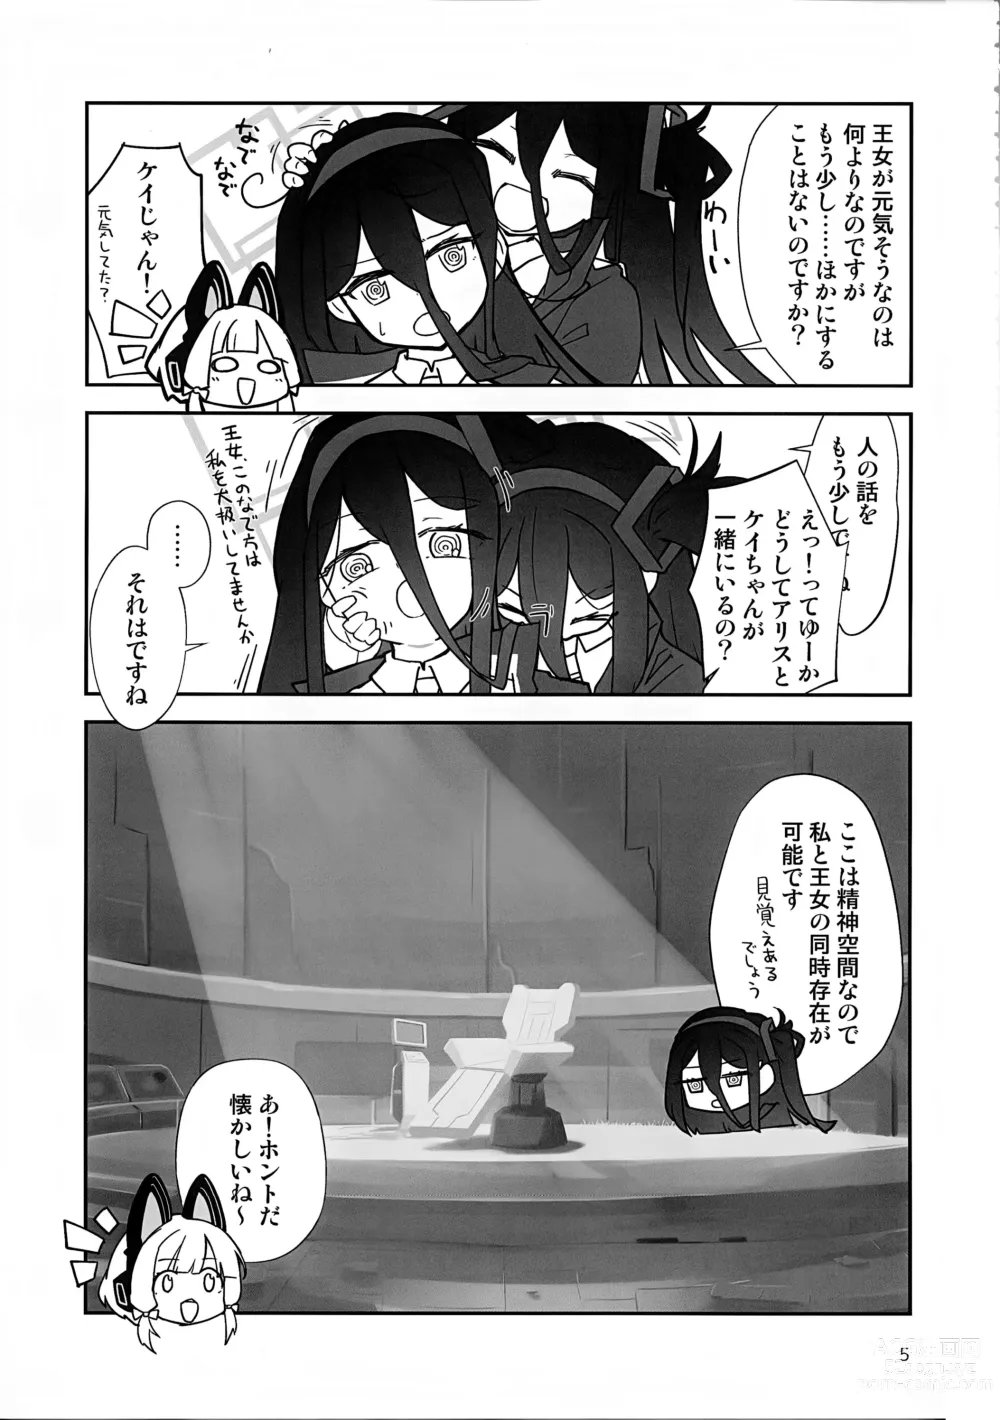 Page 4 of doujinshi Futa